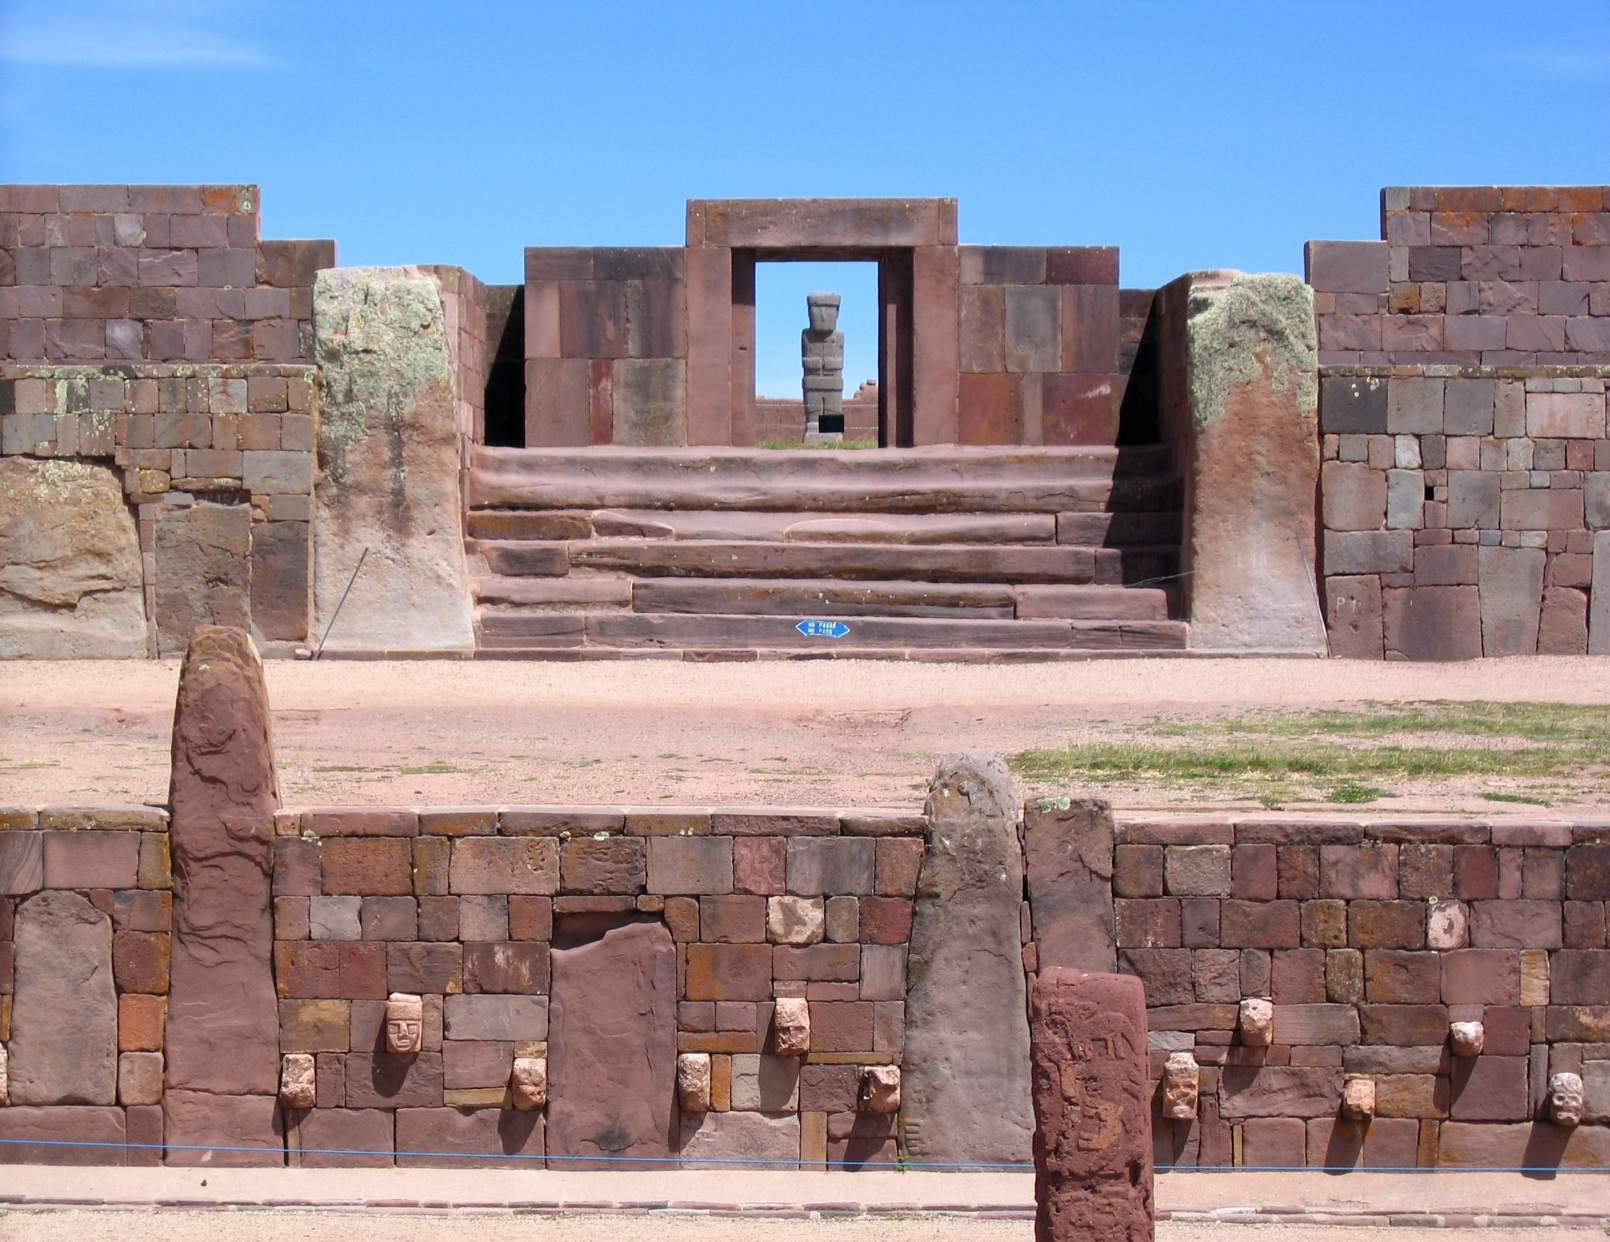 Di tích Tiwanaku: Kalasasaya tiền Inca và các ngôi đền thấp hơn. Chế độ xem biểu tượng điển hình, với Ponce Monolith thẳng hàng với cửa chính của Đền Kalasasaya. Tại điểm phân, Mặt trời chiếu vào khối đá Ponce. © Tín dụng hình ảnh: Xenomanes | Được cấp phép từ DreamsTime.com (Biên tập / Sử dụng Thương mại Kho ảnh, ID: 28395032)